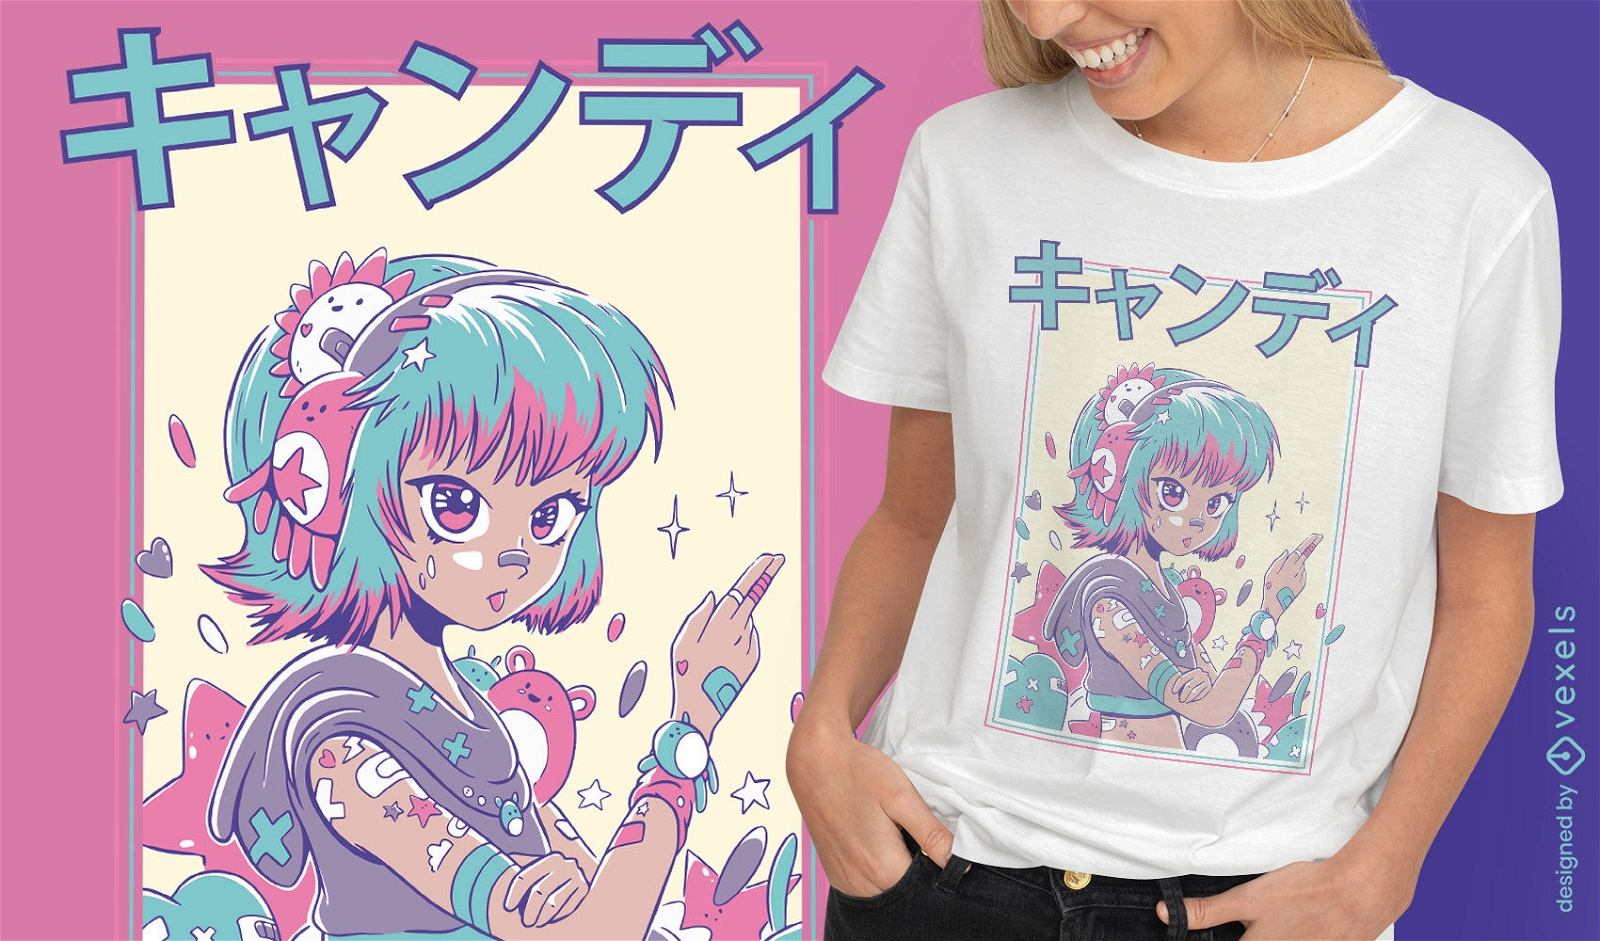 Cute anime japanese girl t-shirt design